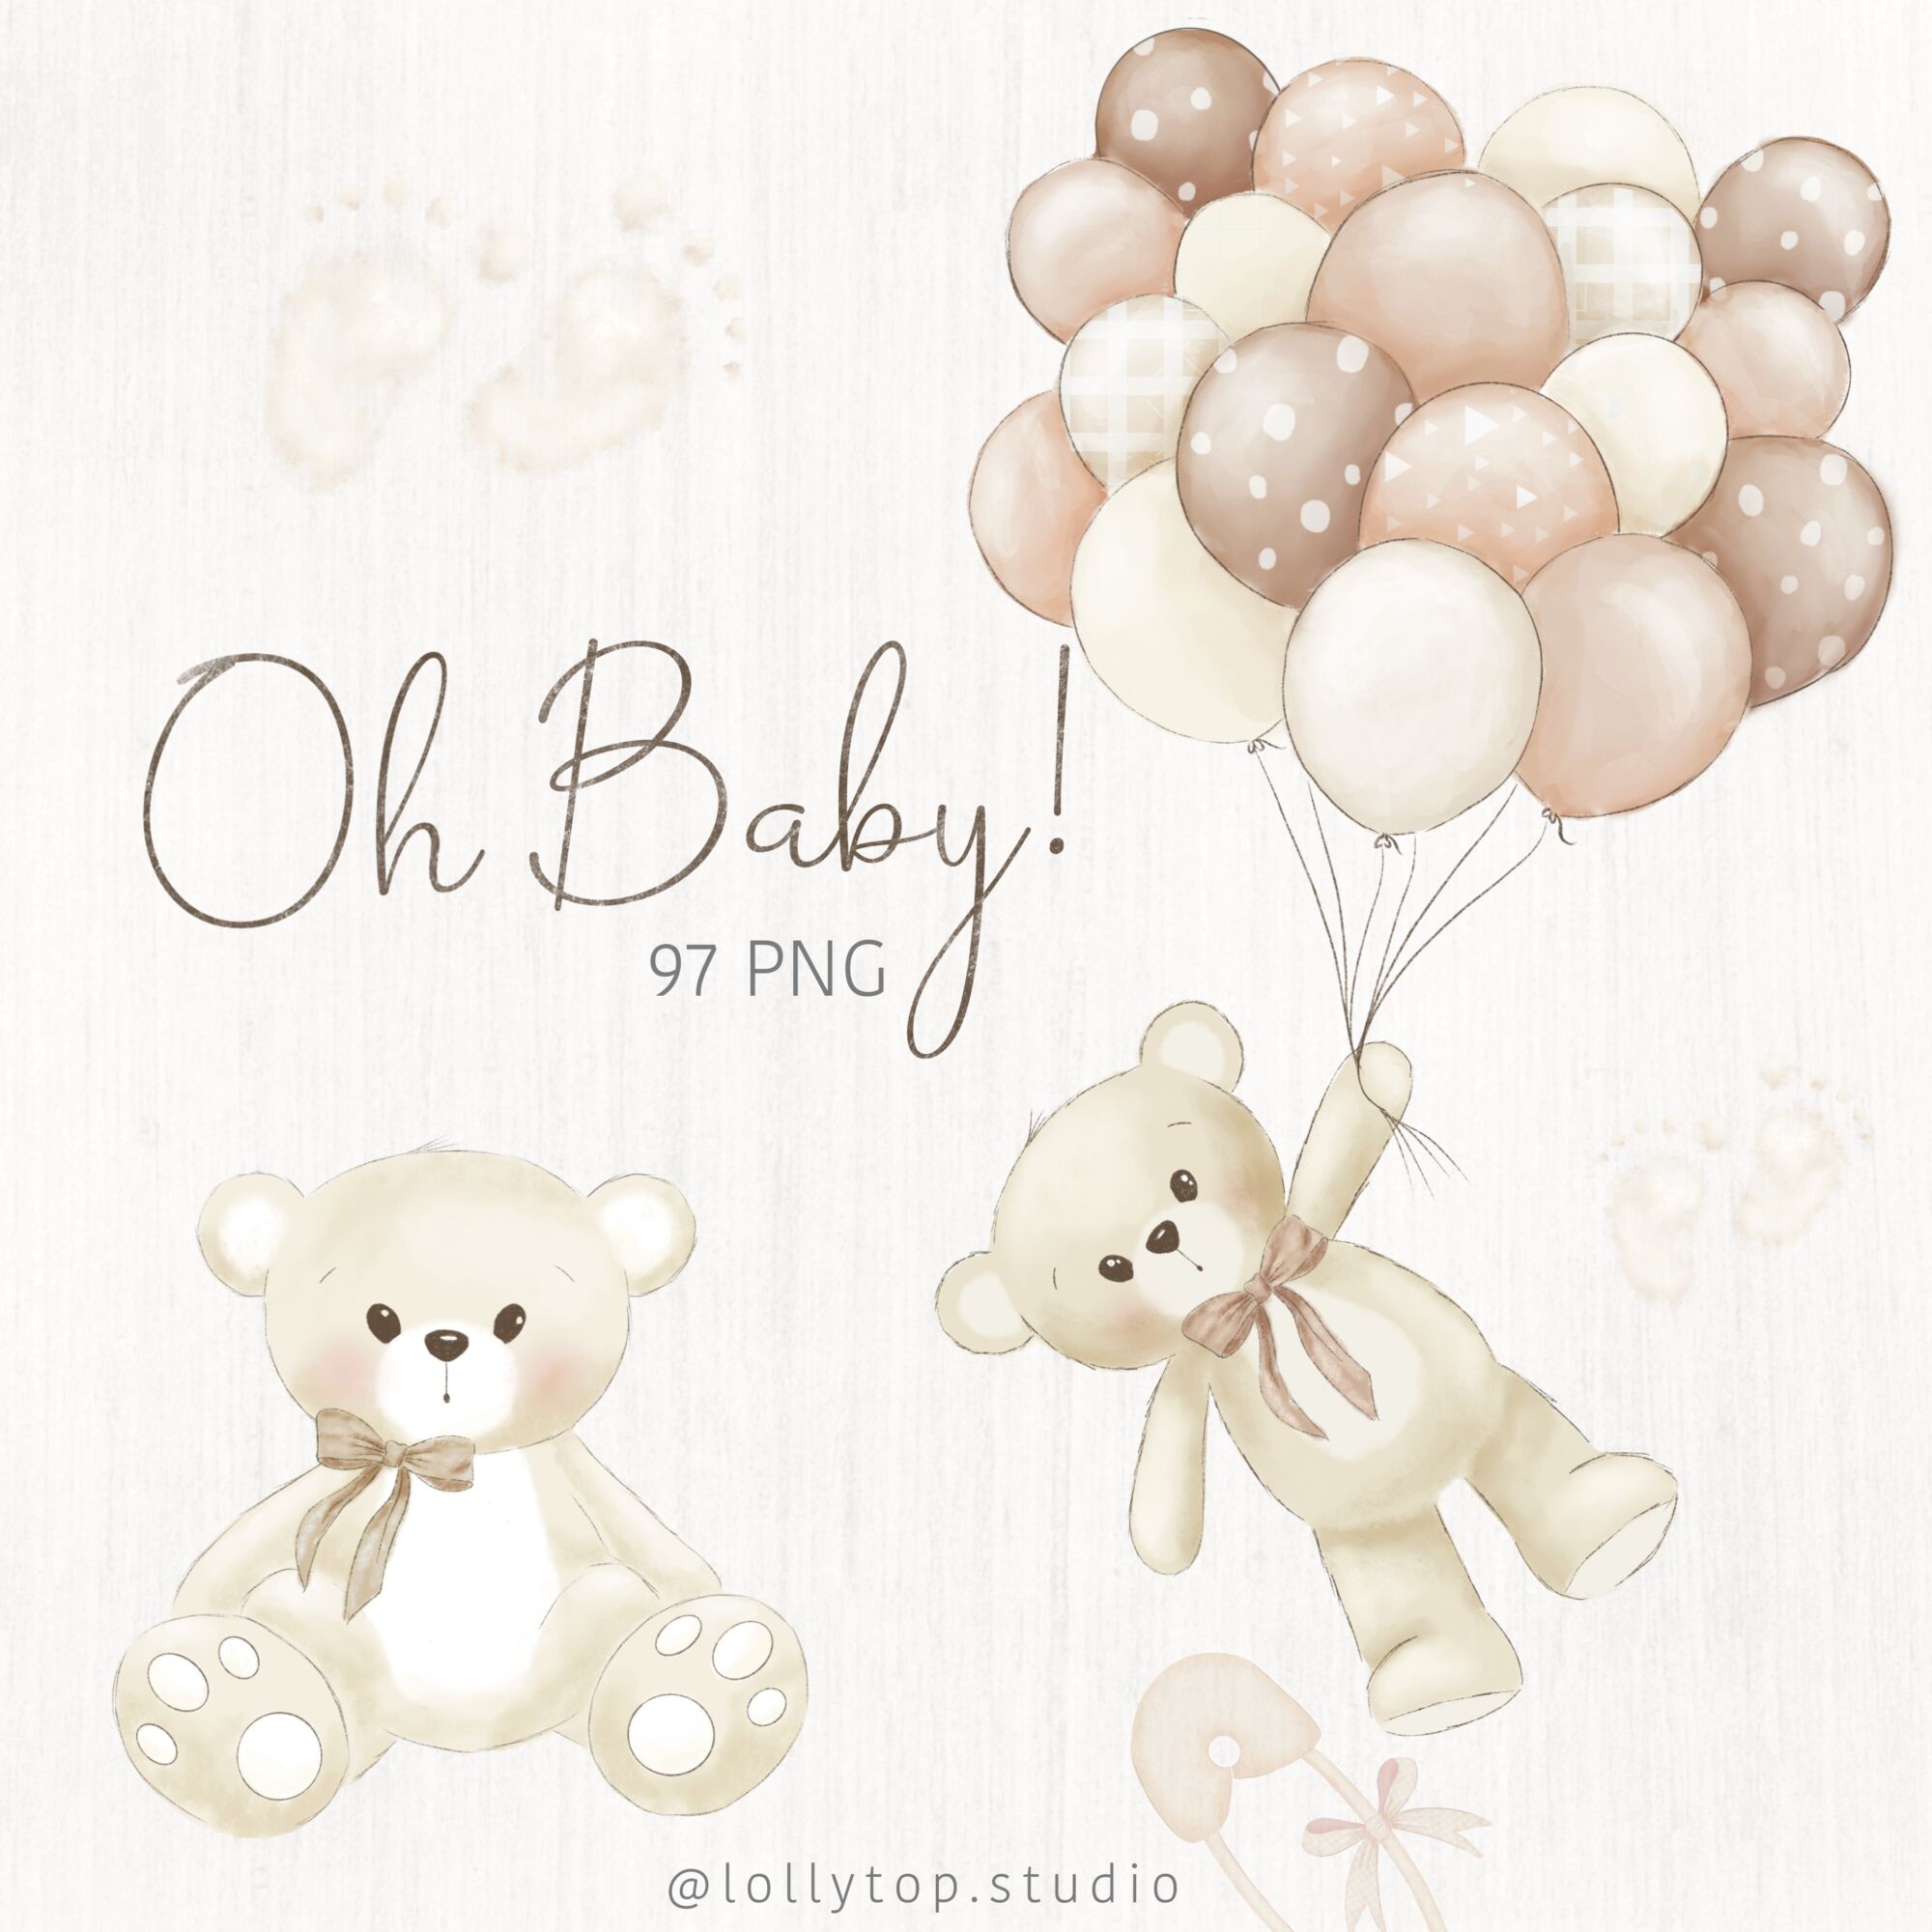 Oh Baby! Ursinho chá de bebê – Ilustrações